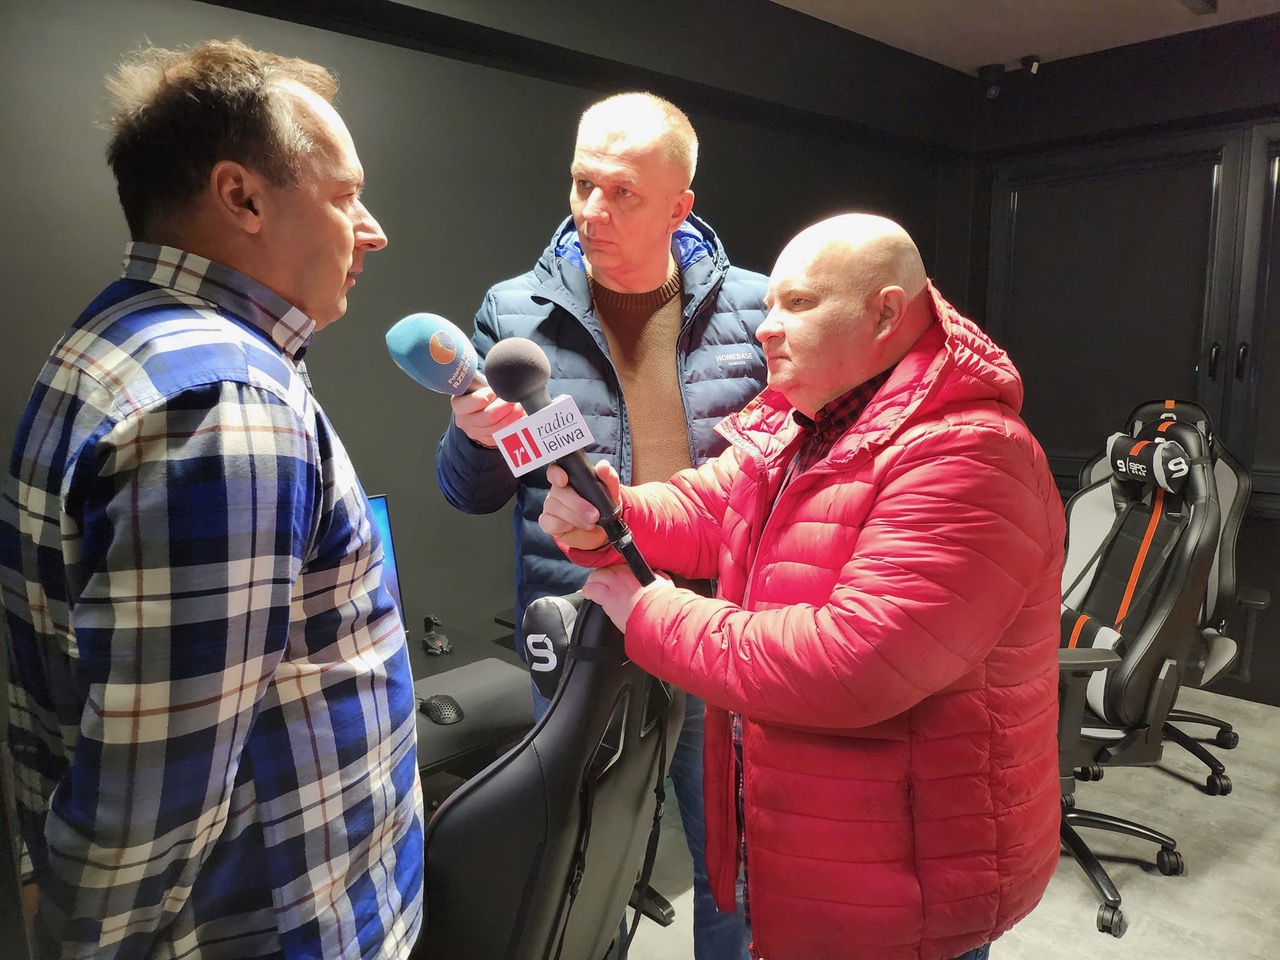 Wywiad radiowy w trakcie nagrywania. Dwaj mężczyźni , jeden w czerwonej, drugi w niebieskiej kurtce przeprowadzają wywiad radiowy z innym mężczyzną w kraciastej koszuli.